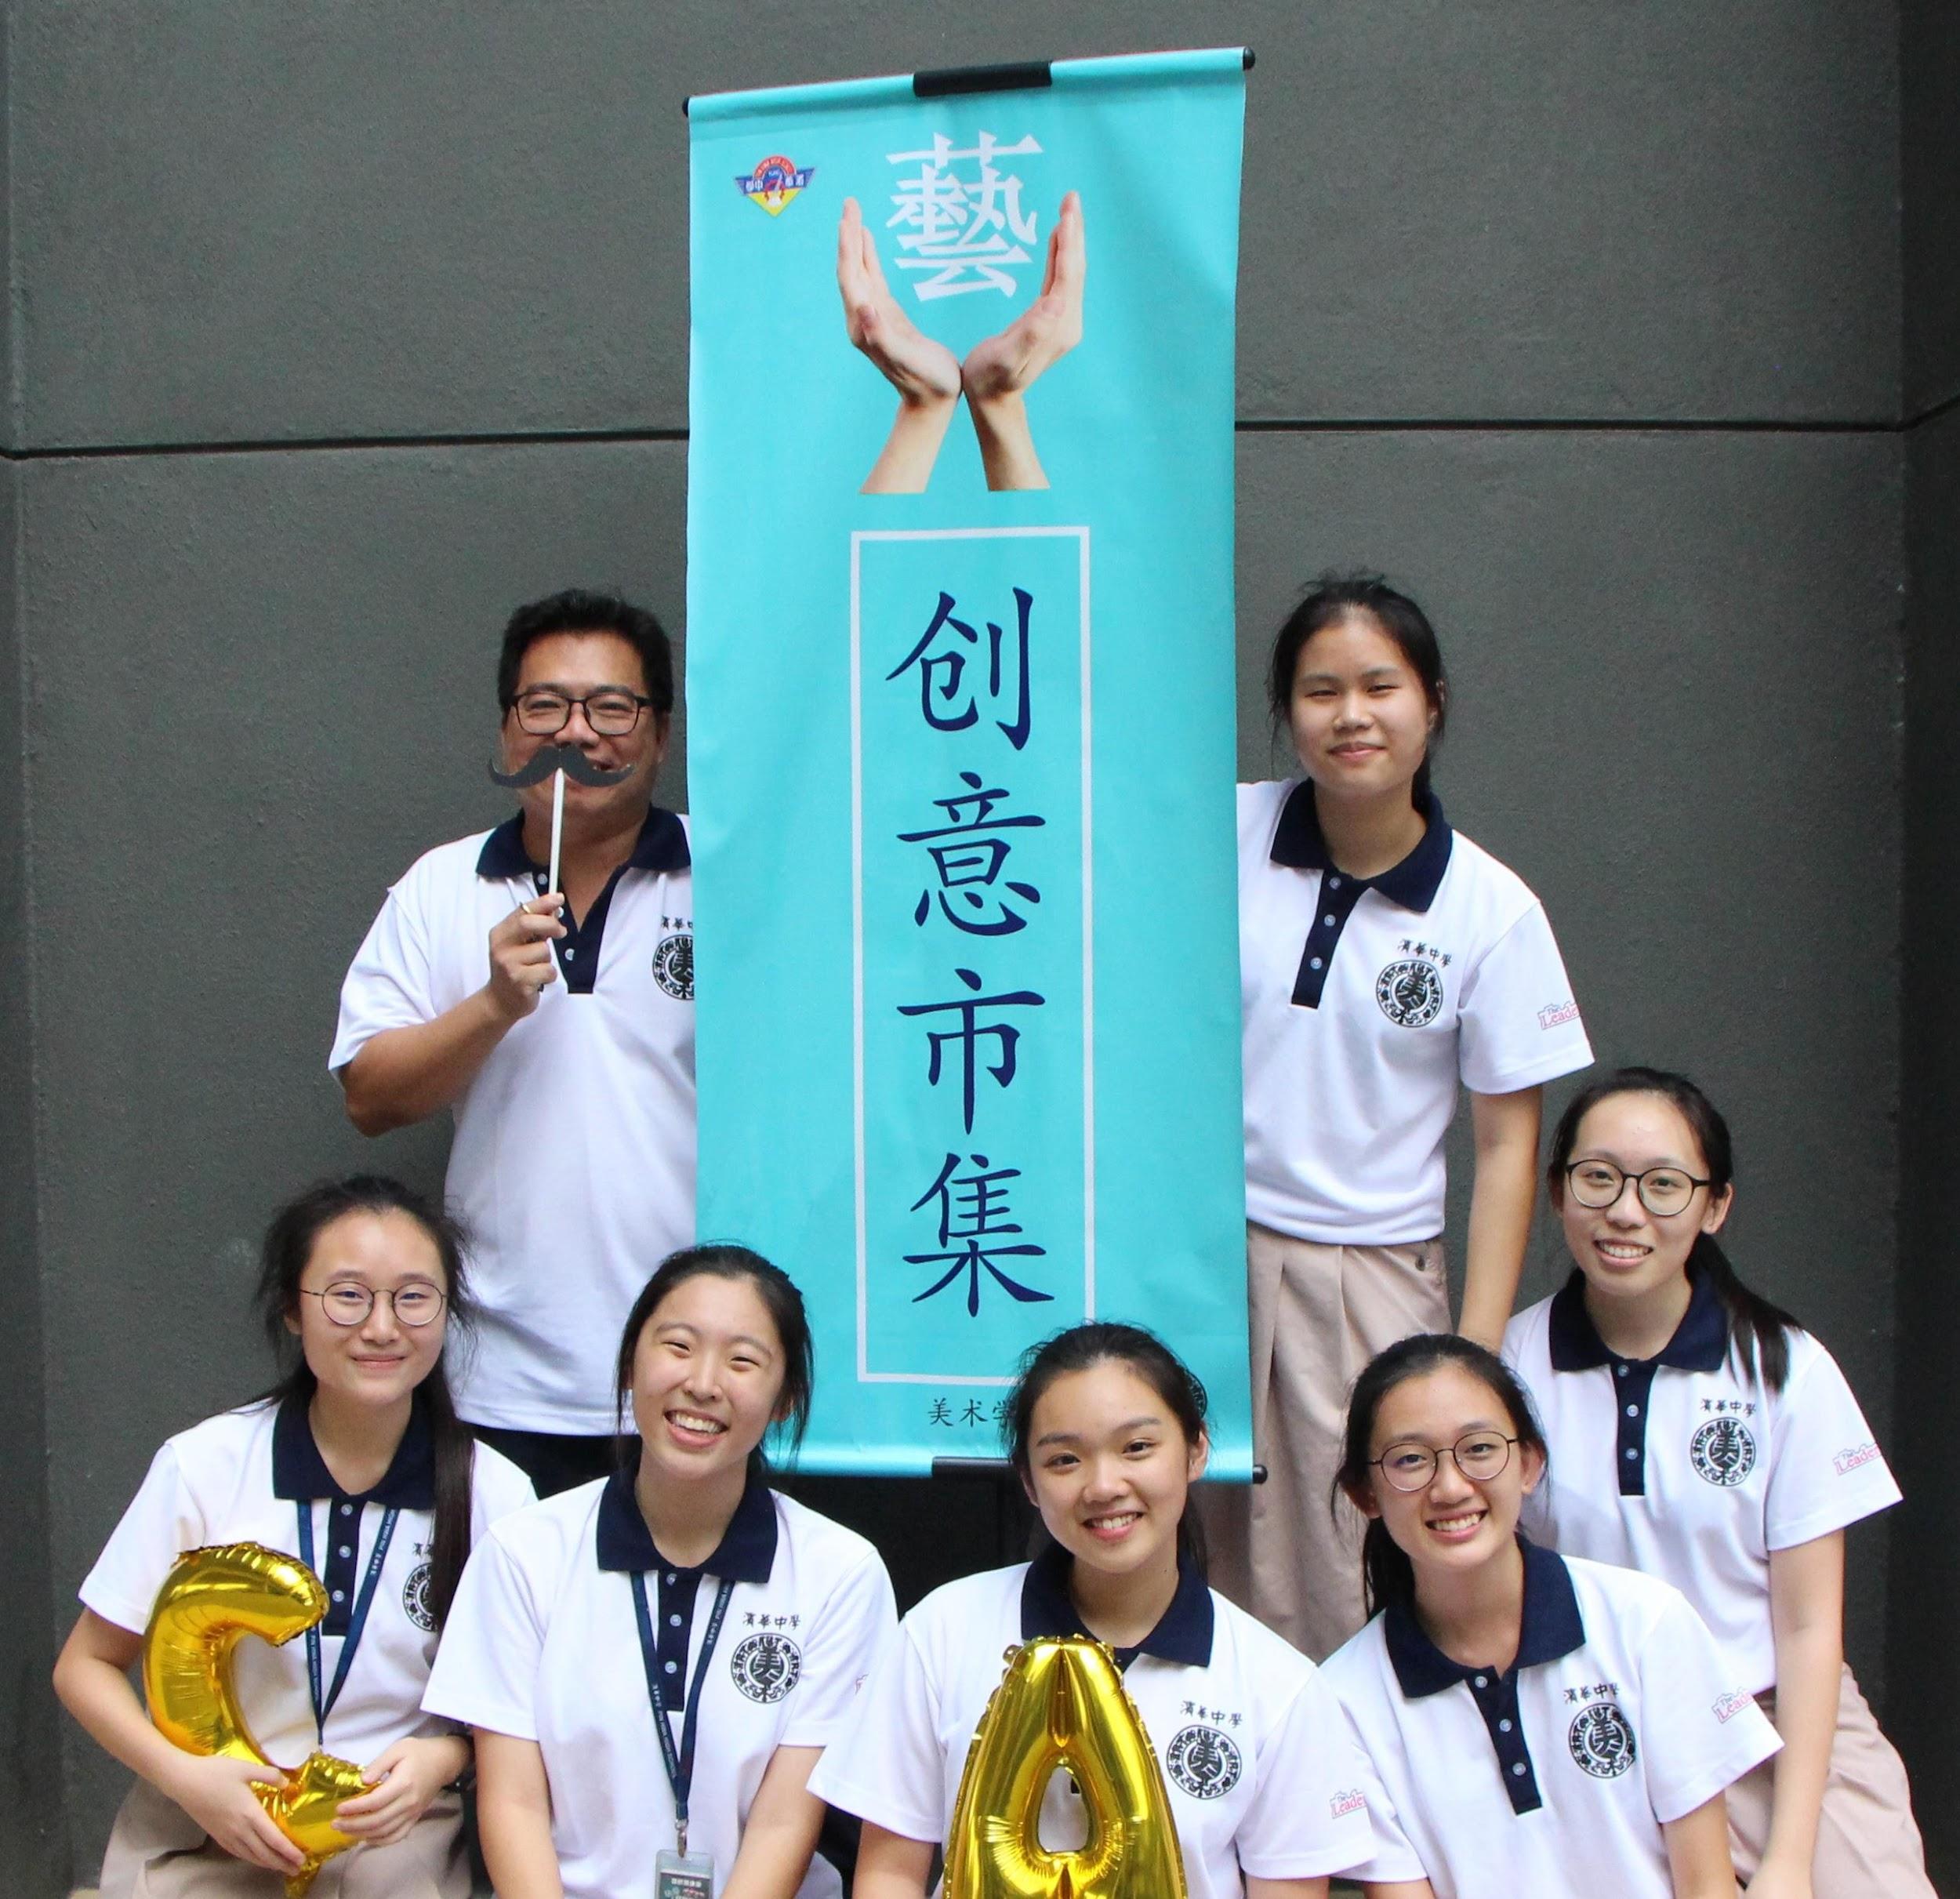 陳傑峰教師與學生參加創意市集活動